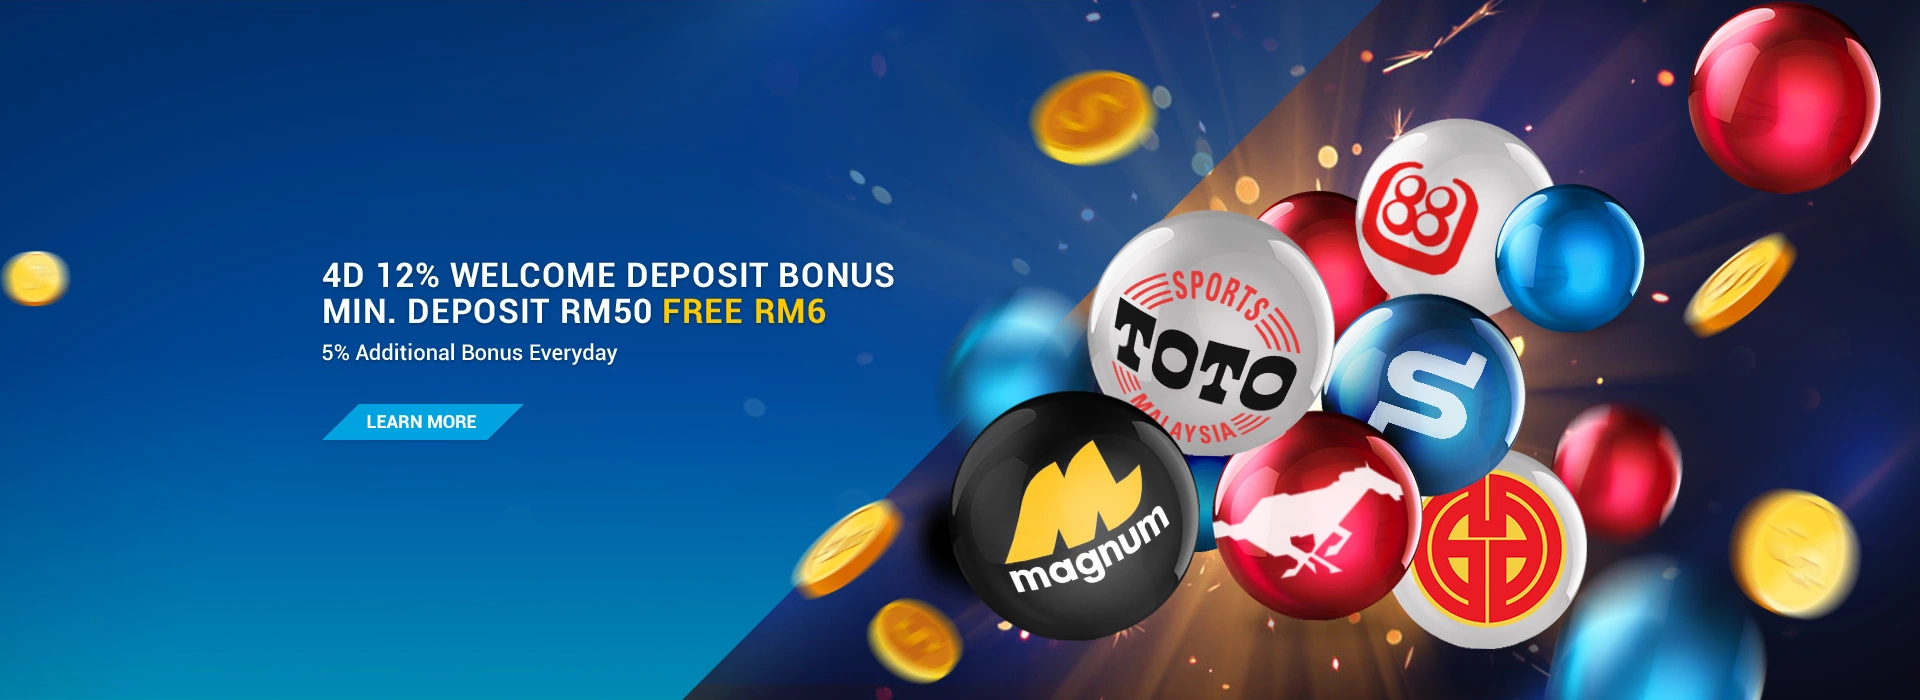 4D 12 Welcome Bonus Deposit RM50 Free RM6 en